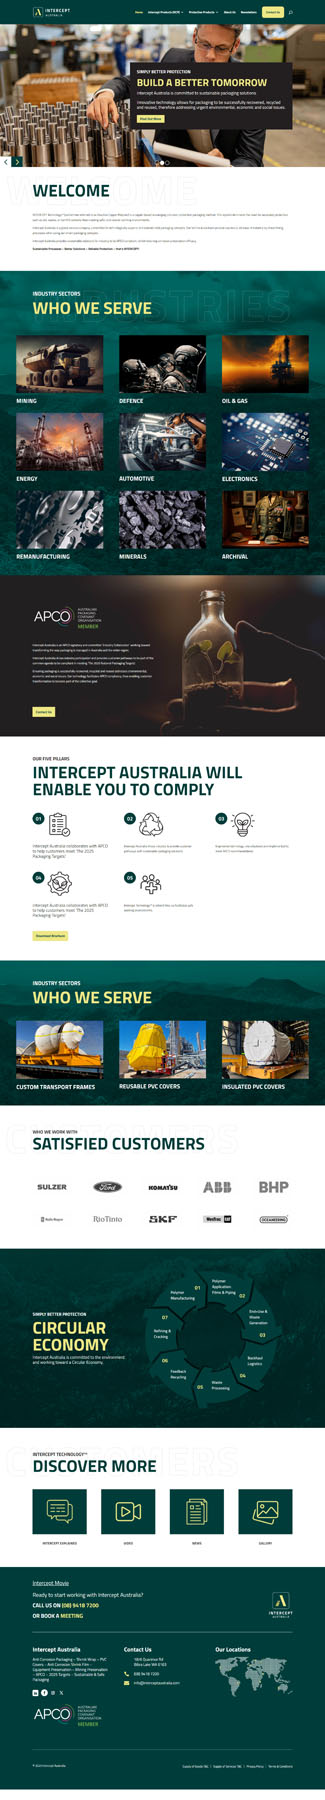 Intercept Australia WordPress development